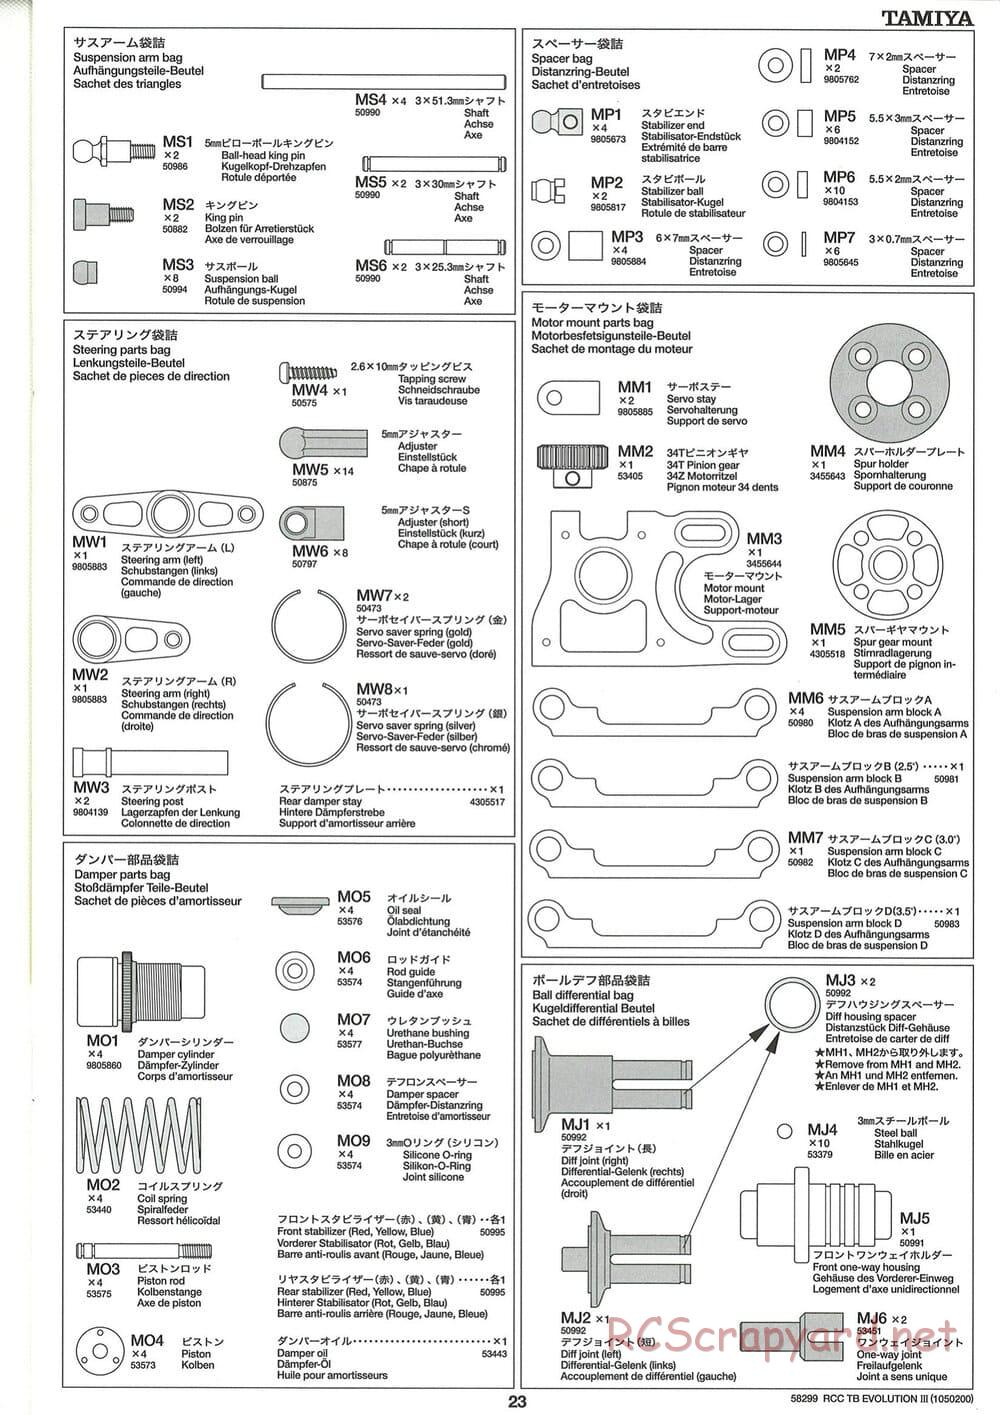 Tamiya - TB Evolution III Chassis - Manual - Page 24